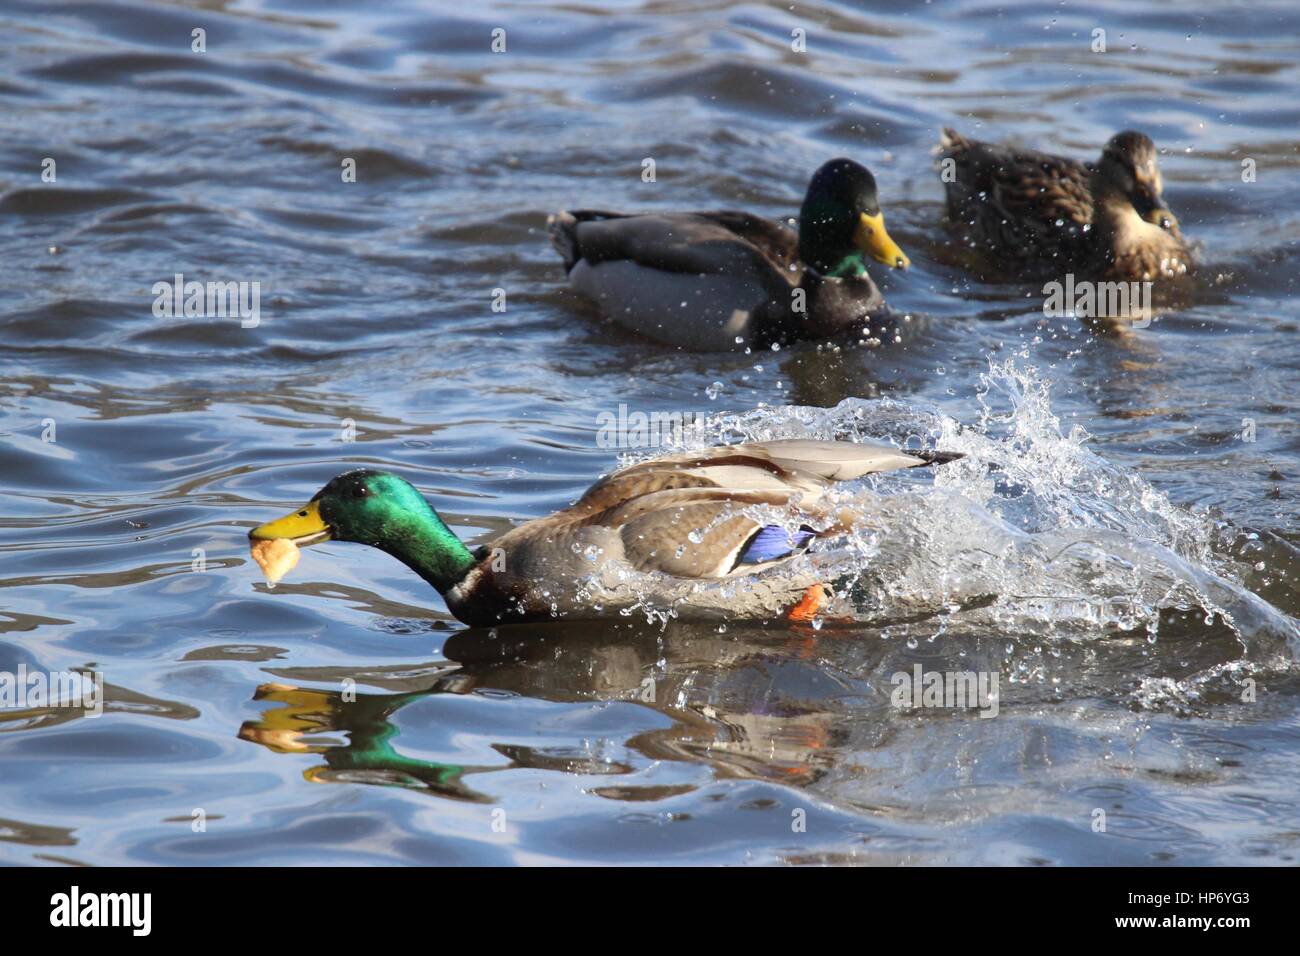 Un maschio di Mallard duck afferrando un pezzo di pane nel suo becco e velocità di allontanamento dall'altra anatre Foto Stock